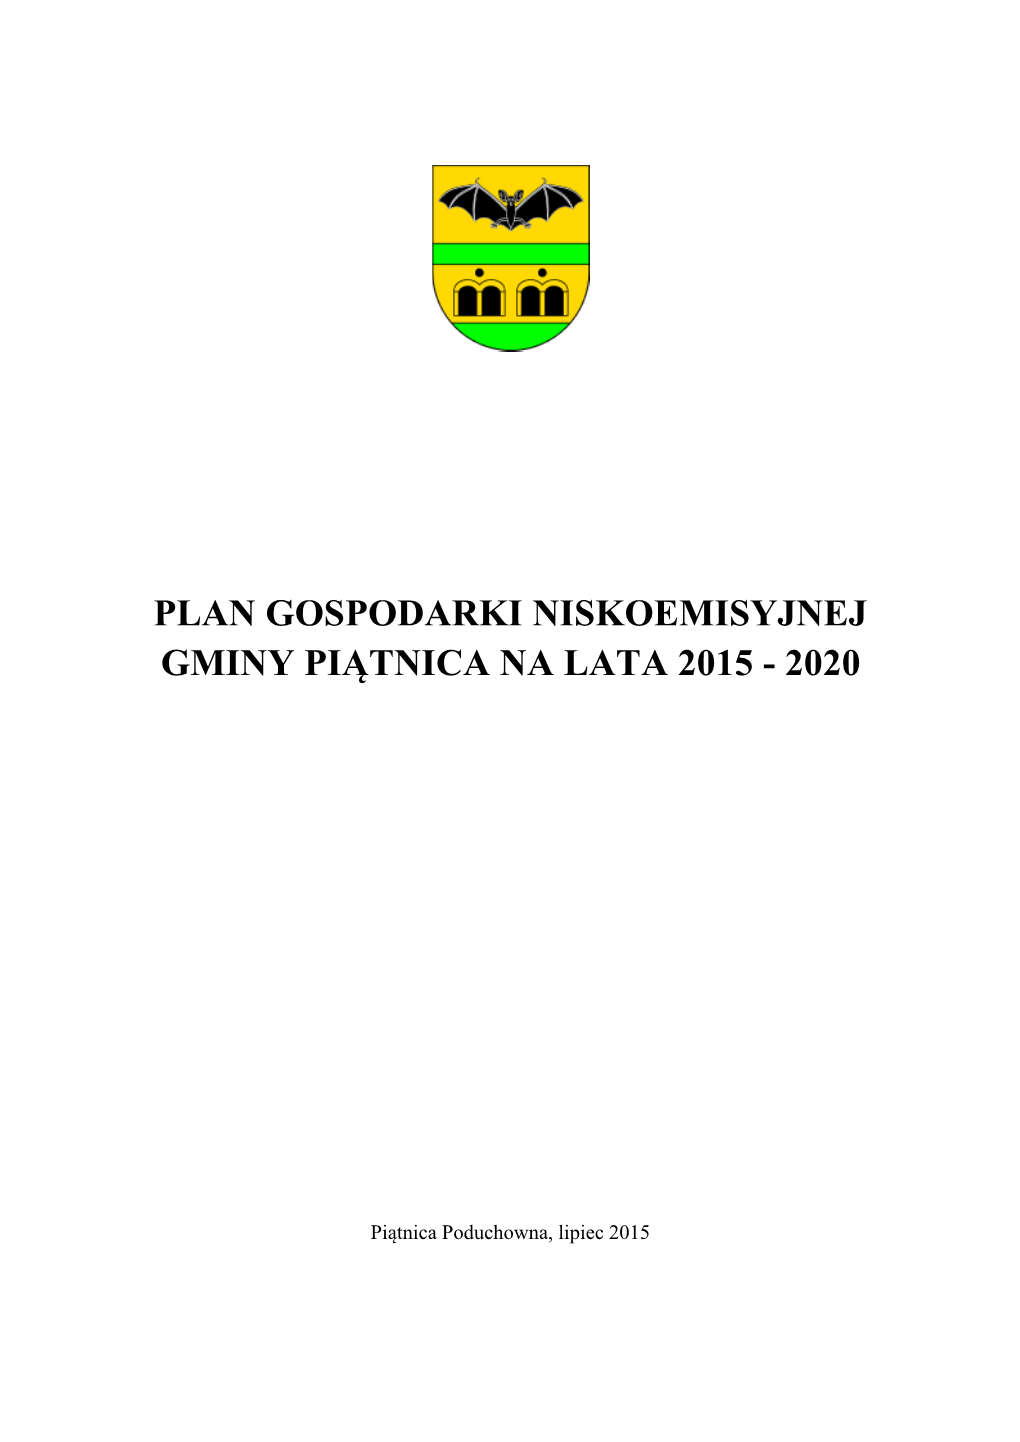 Plan Gospodarki Niskoemisyjnej Gminy Piątnica Na Lata 2015 - 2020